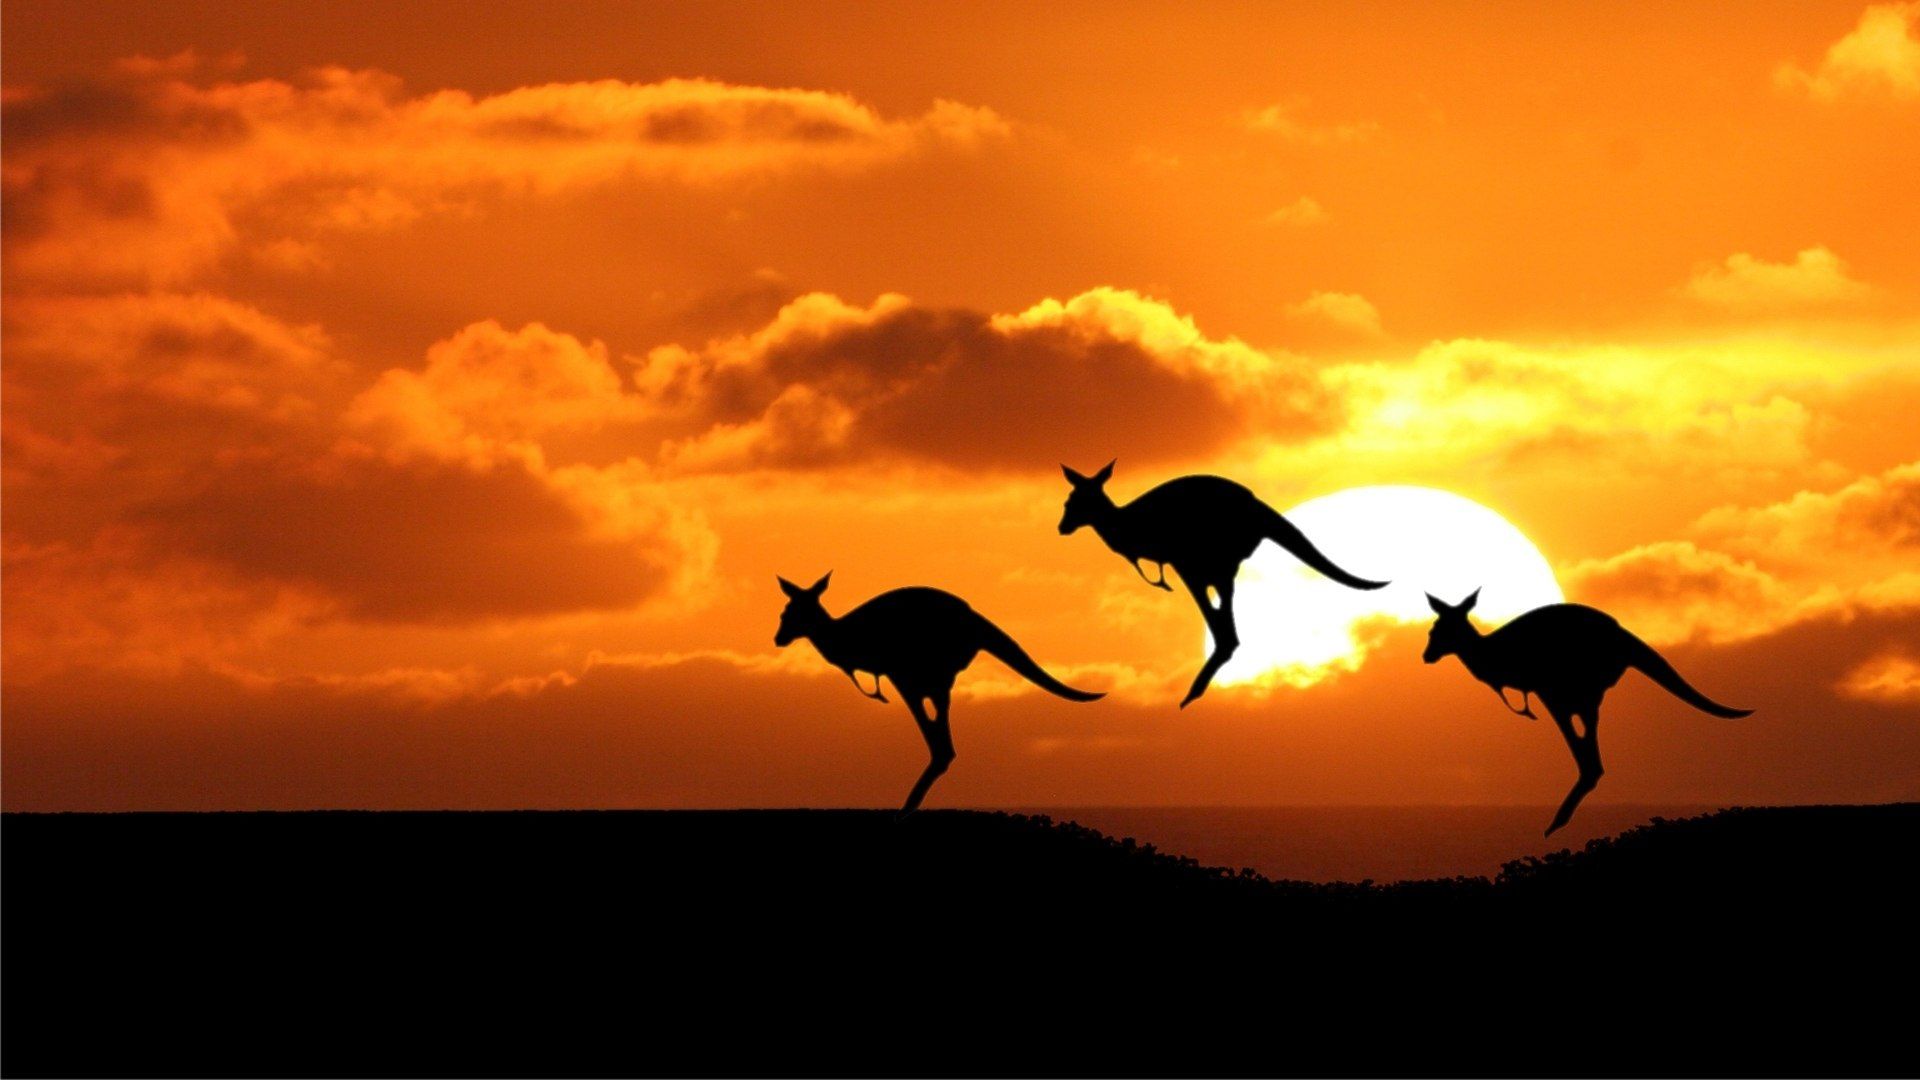 Kangaroo At Sunset